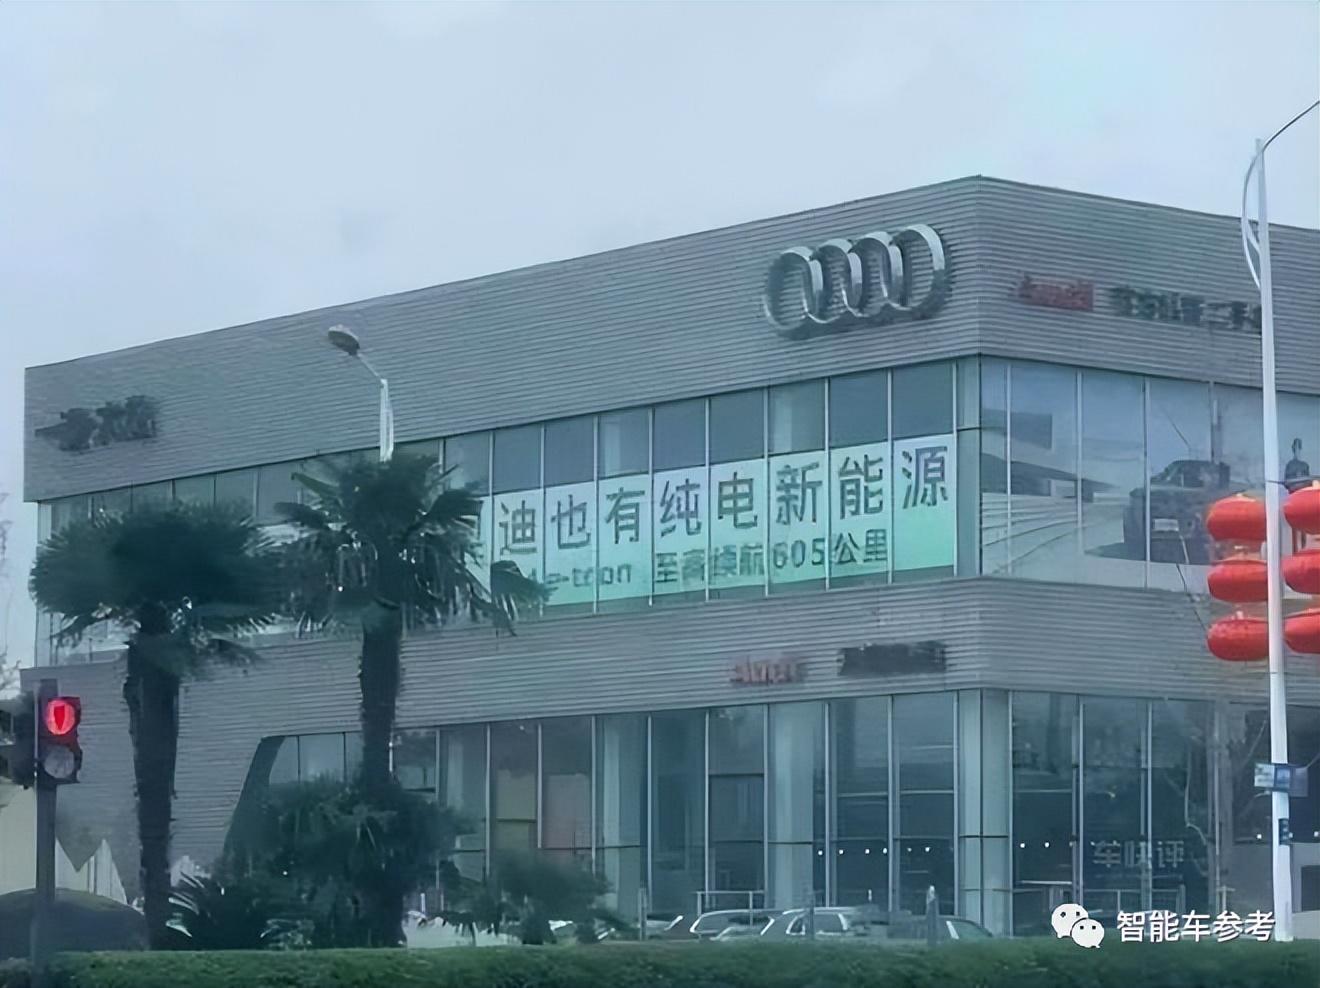 奥迪被曝求购中国电动车技术：大众太拉胯，3个月只卖出400辆新能源